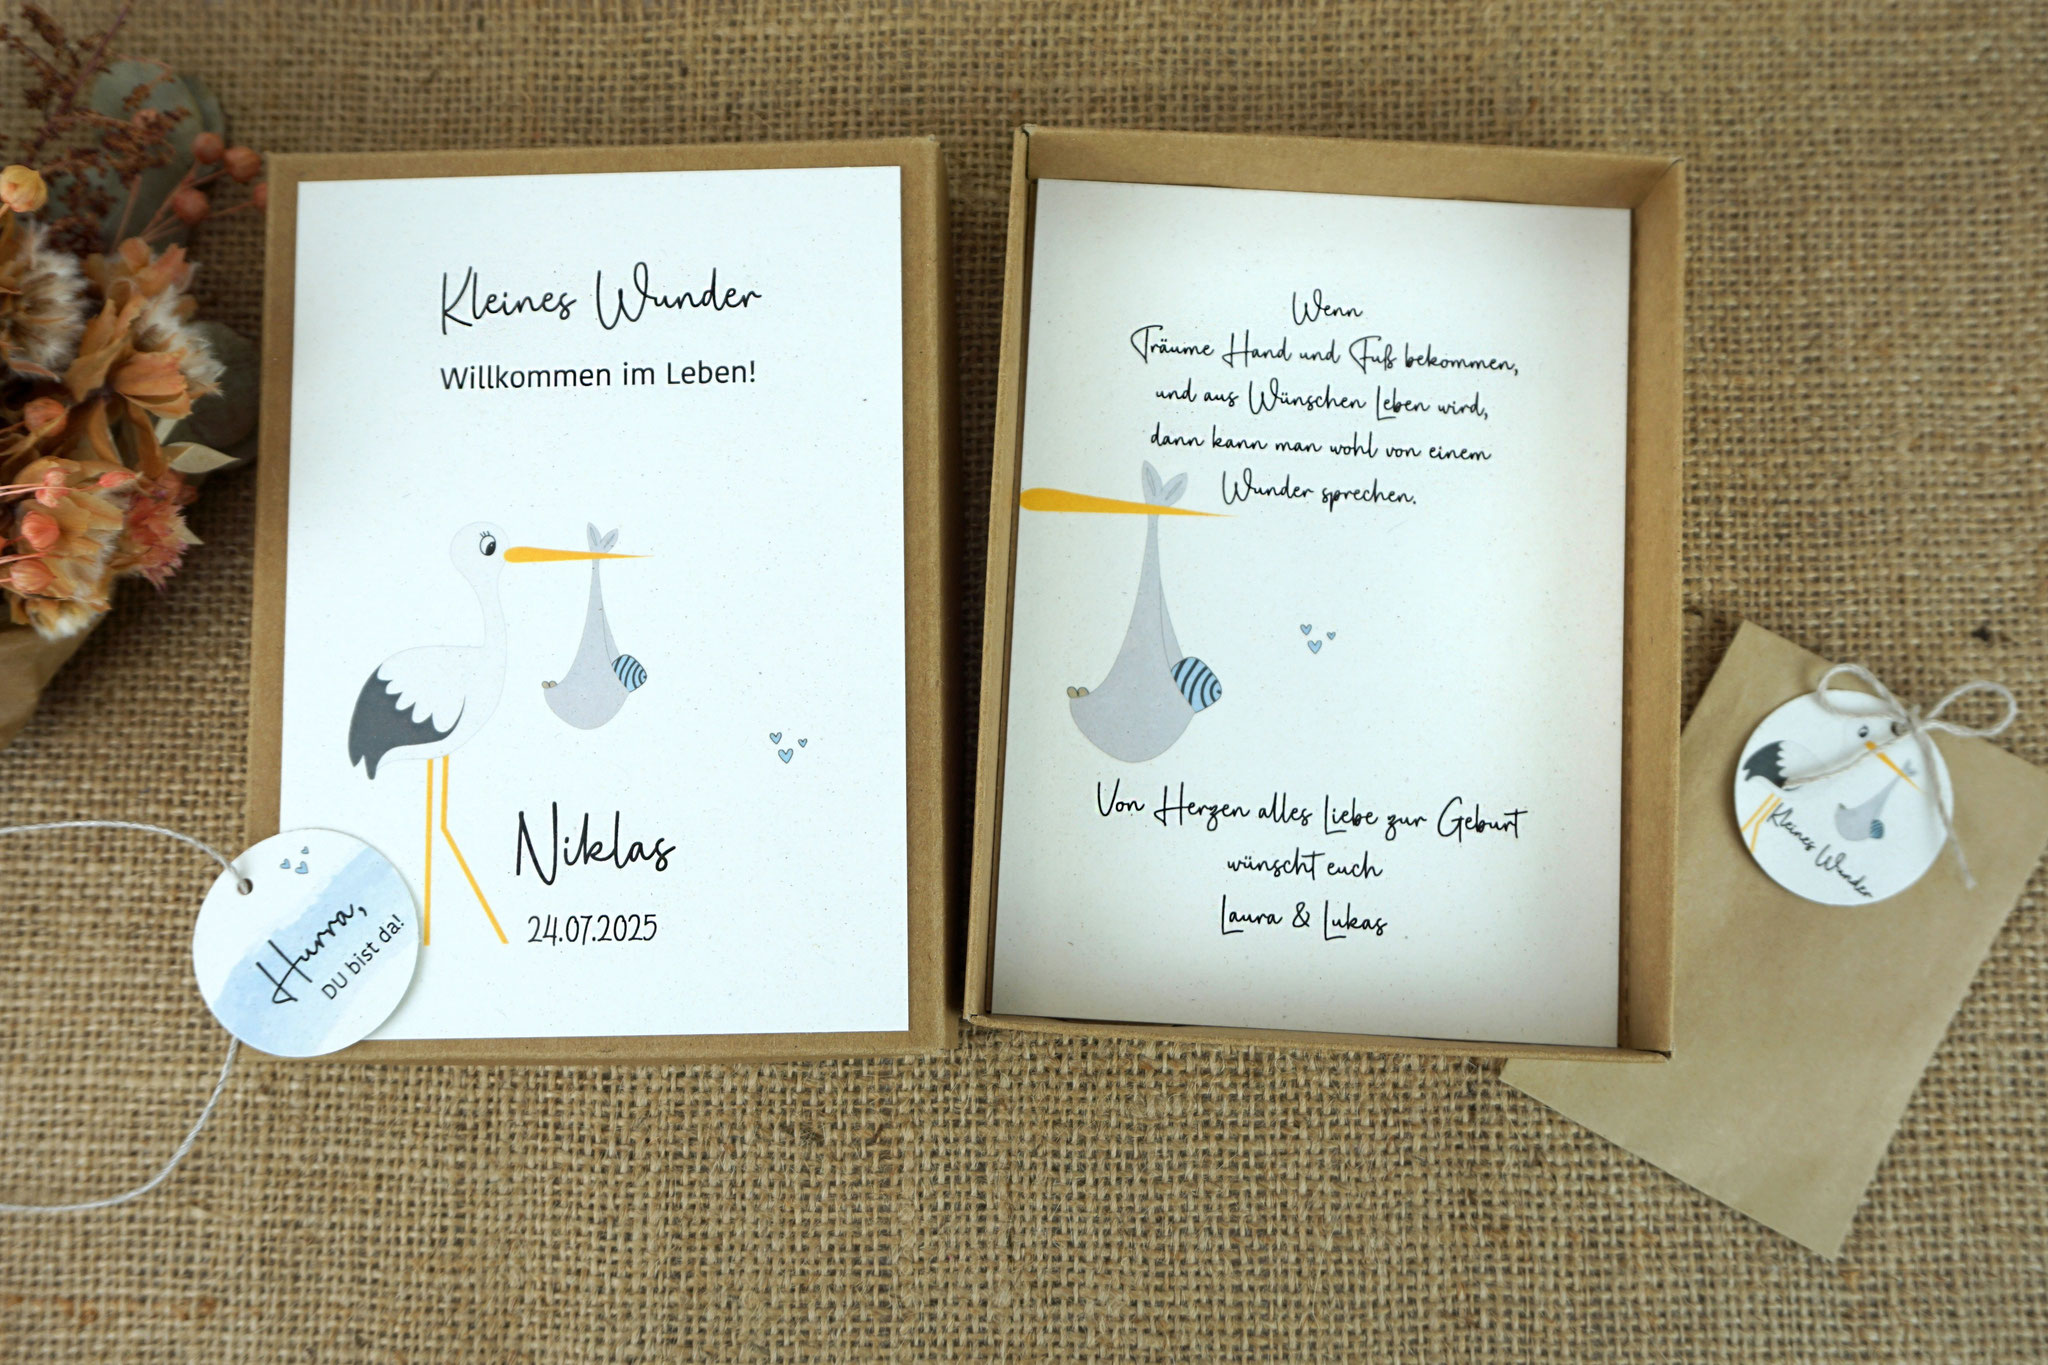 Geschenkebox zur Geburt - Design Storch, Innenansicht - Text "Kleines Wunder"